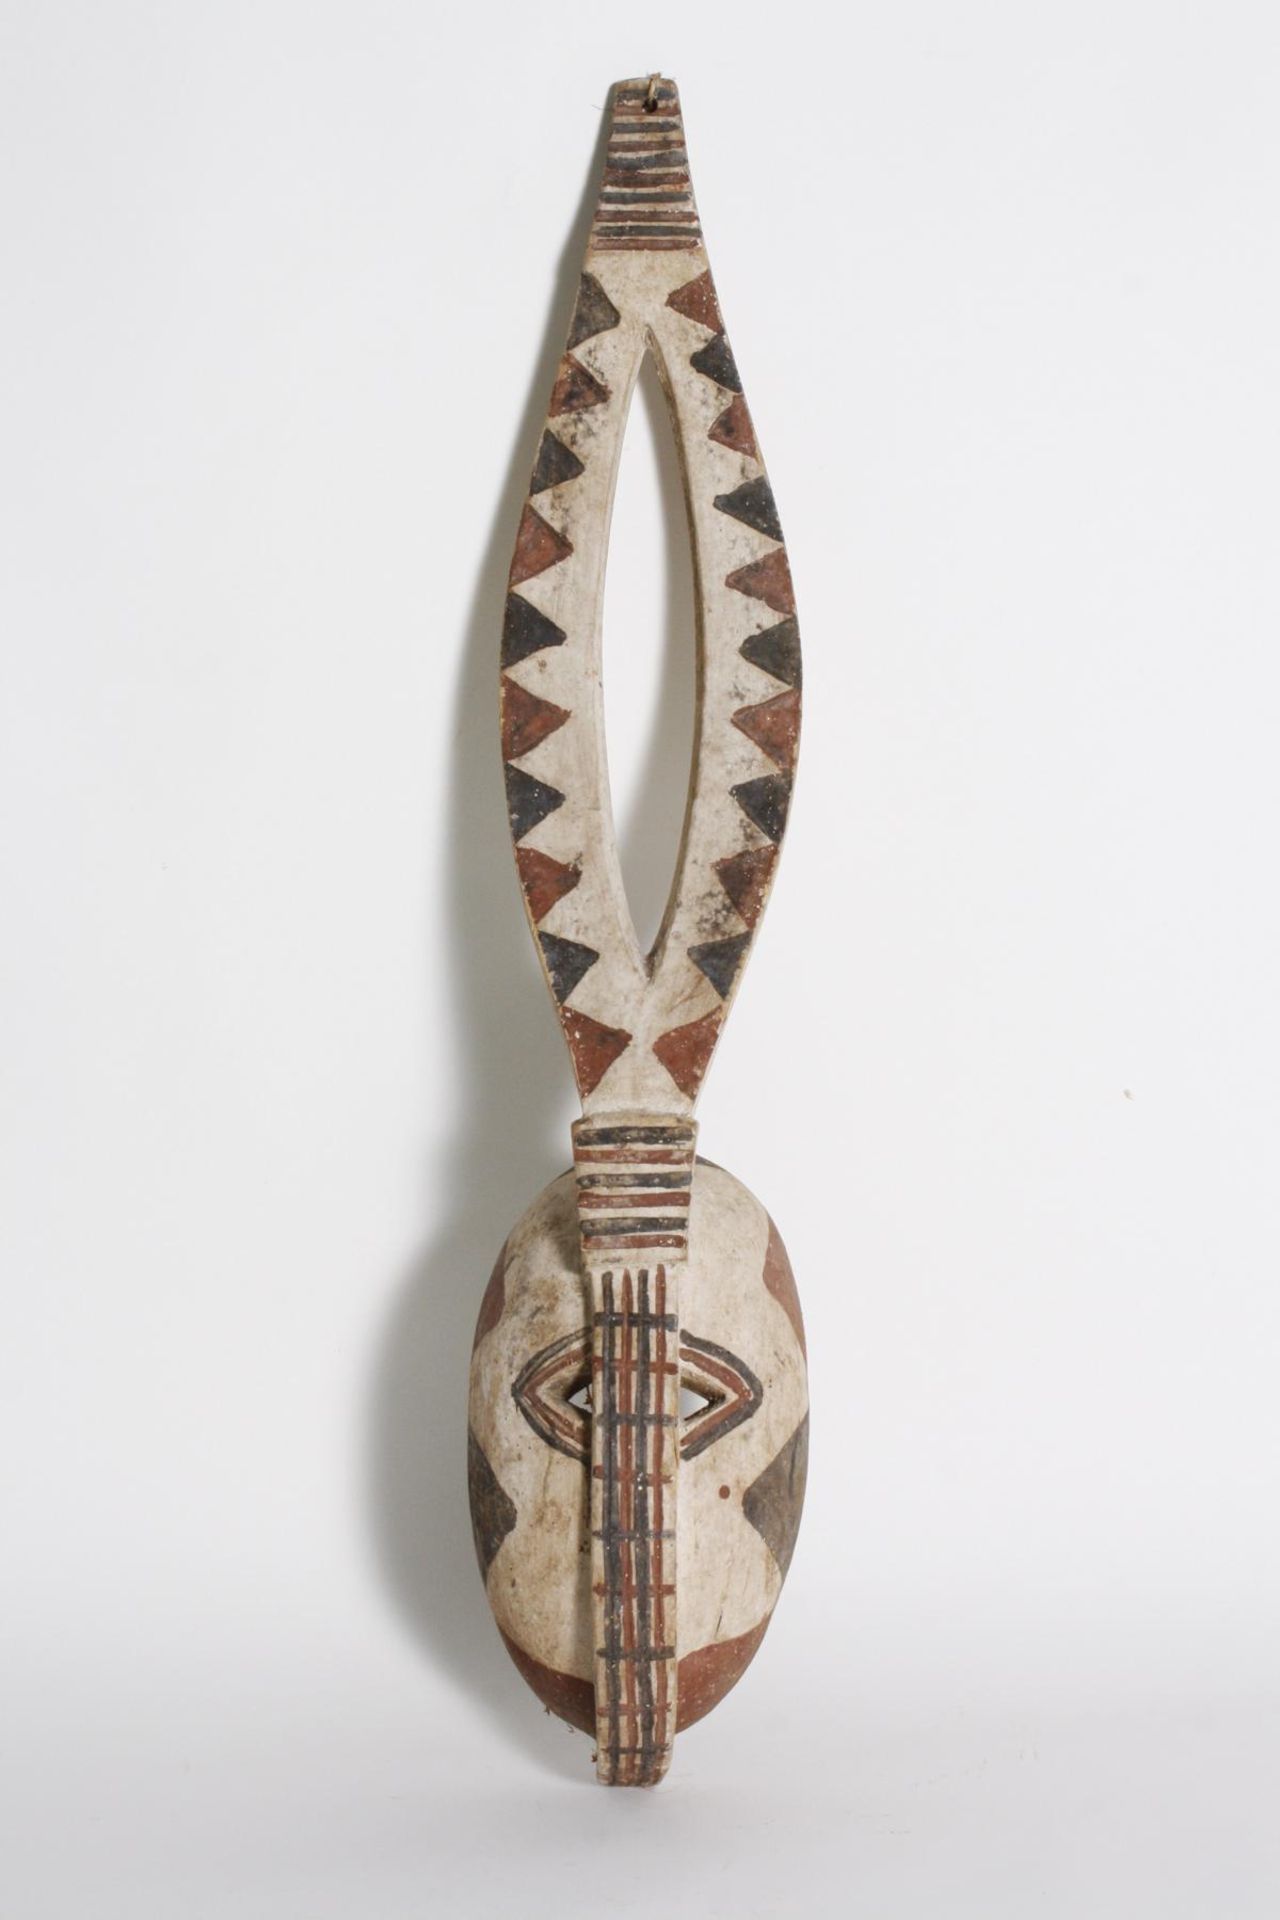 Antilopenmaske, Mossi, Burkina Faso, 2. Hälfte 20. Jh.Aus einem Stück Holz geschnitzte